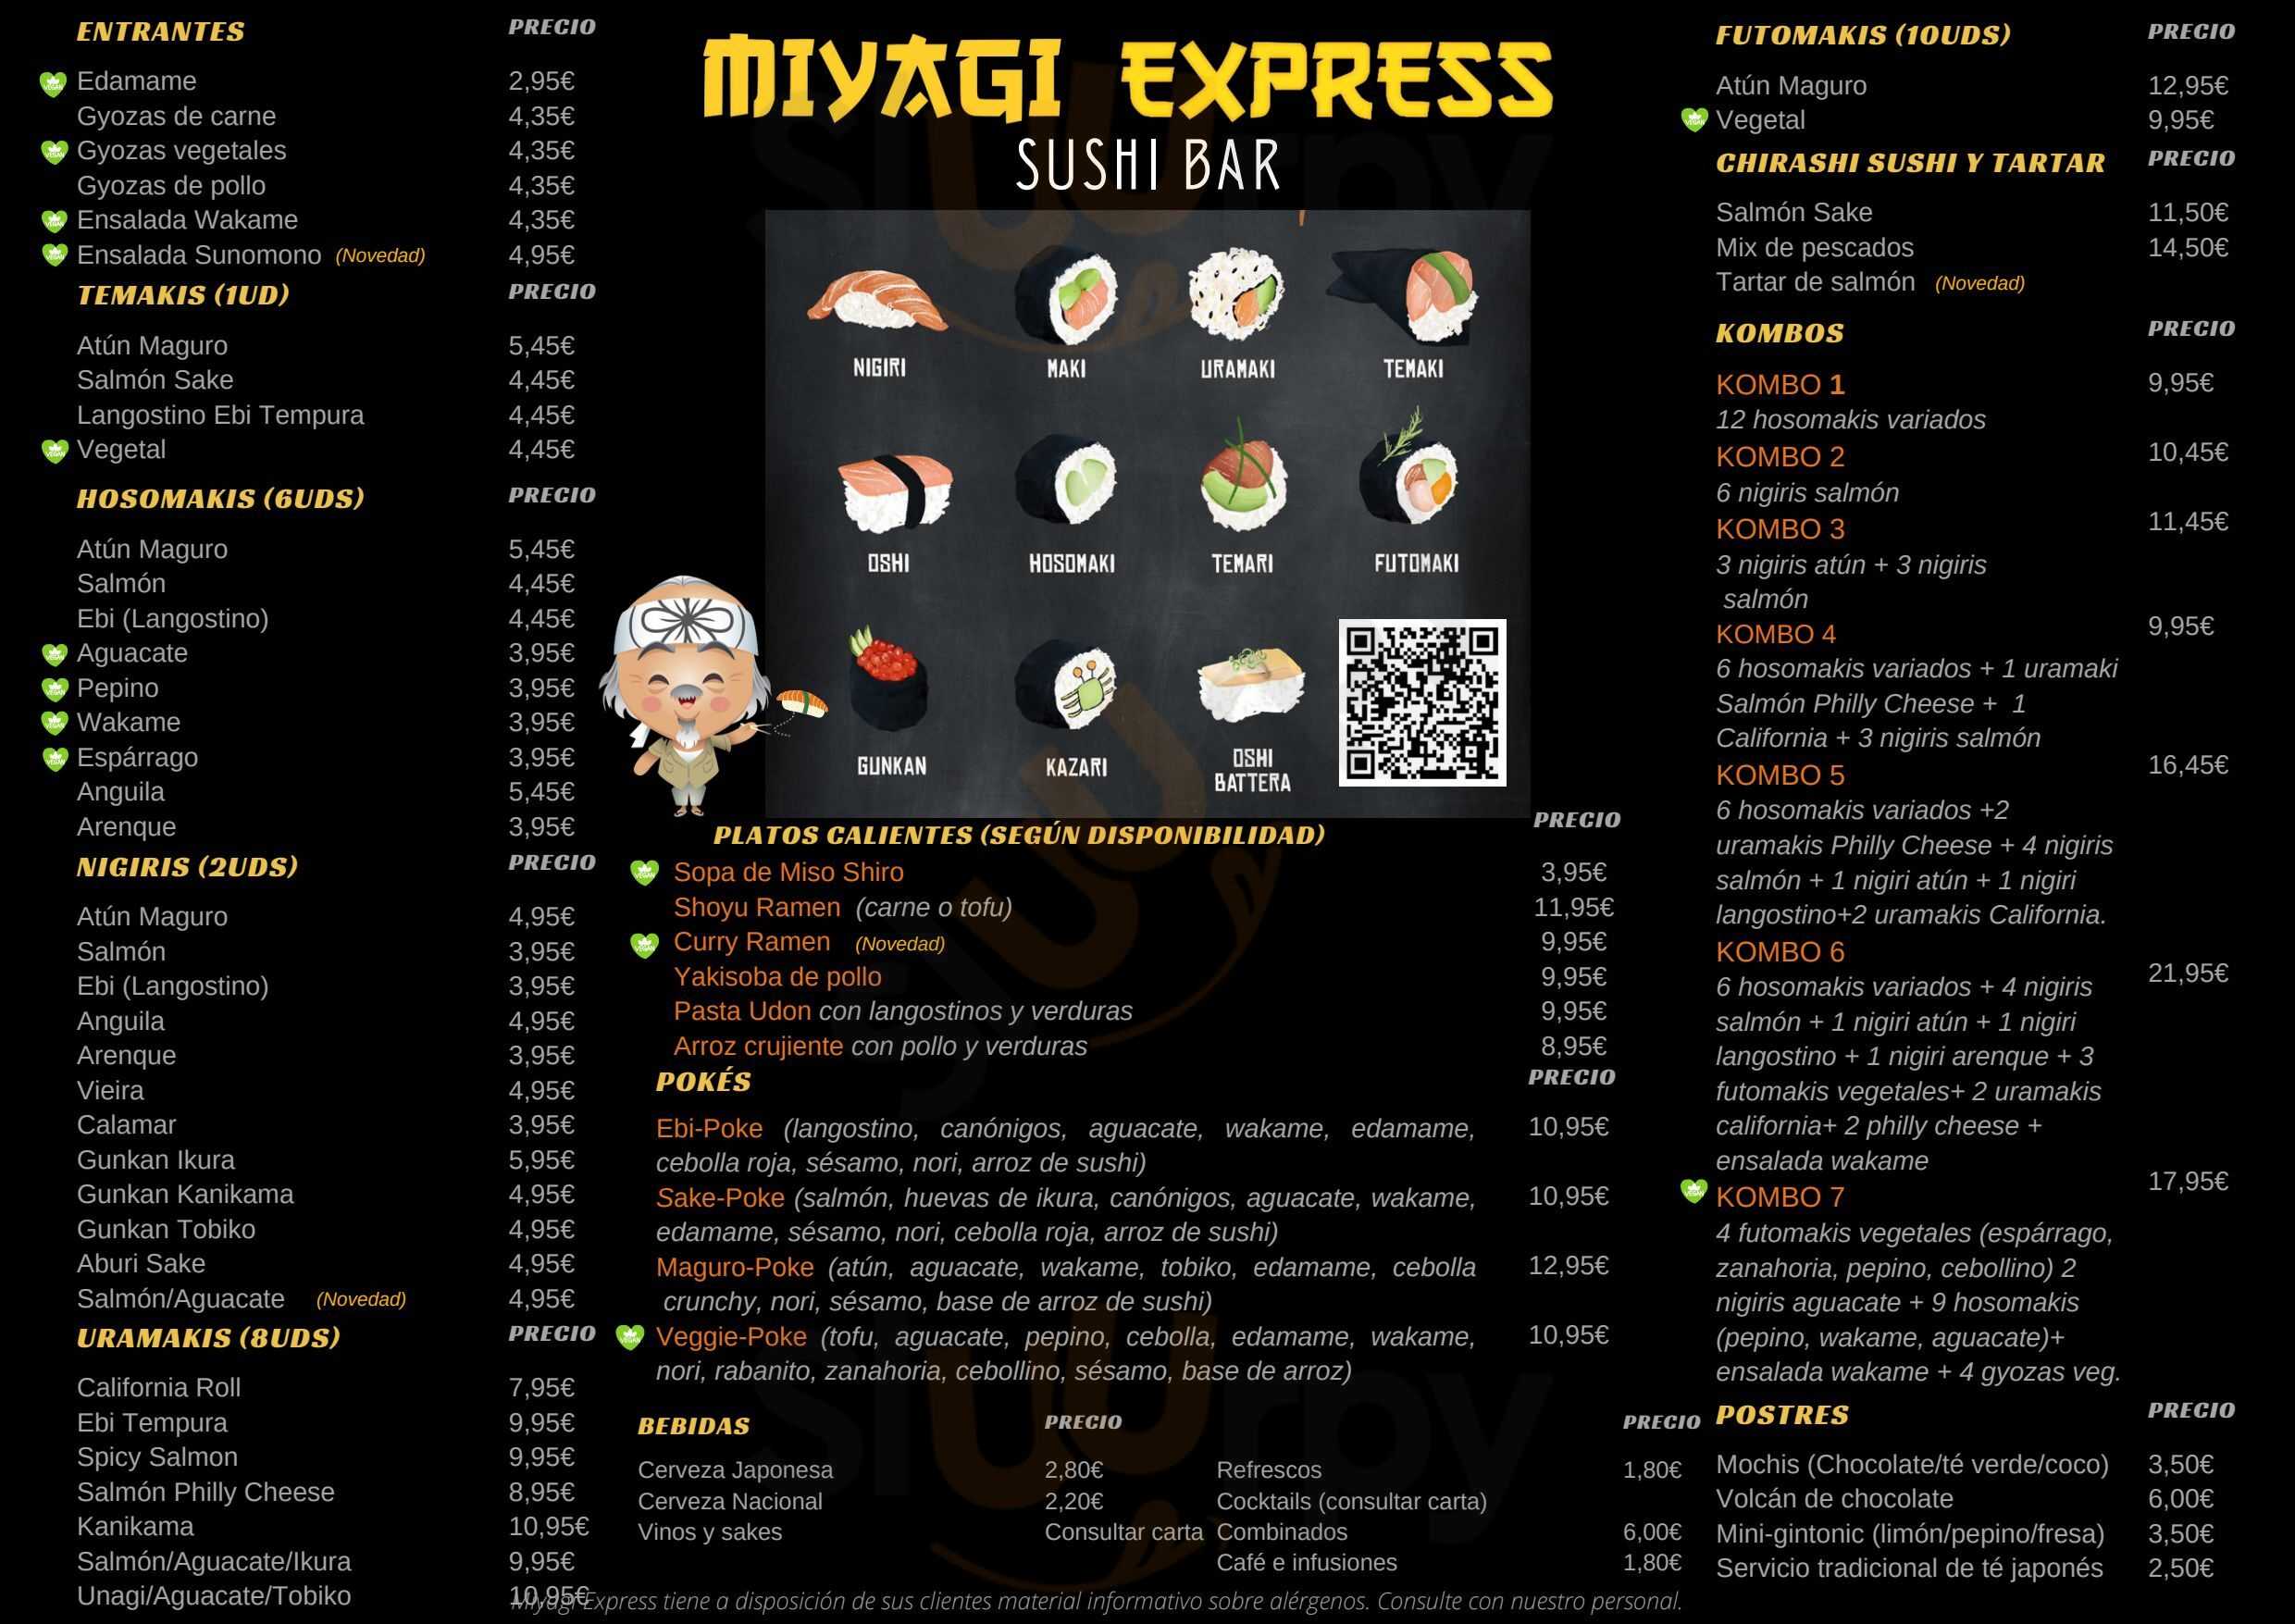 Miyagi Express Sushi Bar Ronda Menu - 1